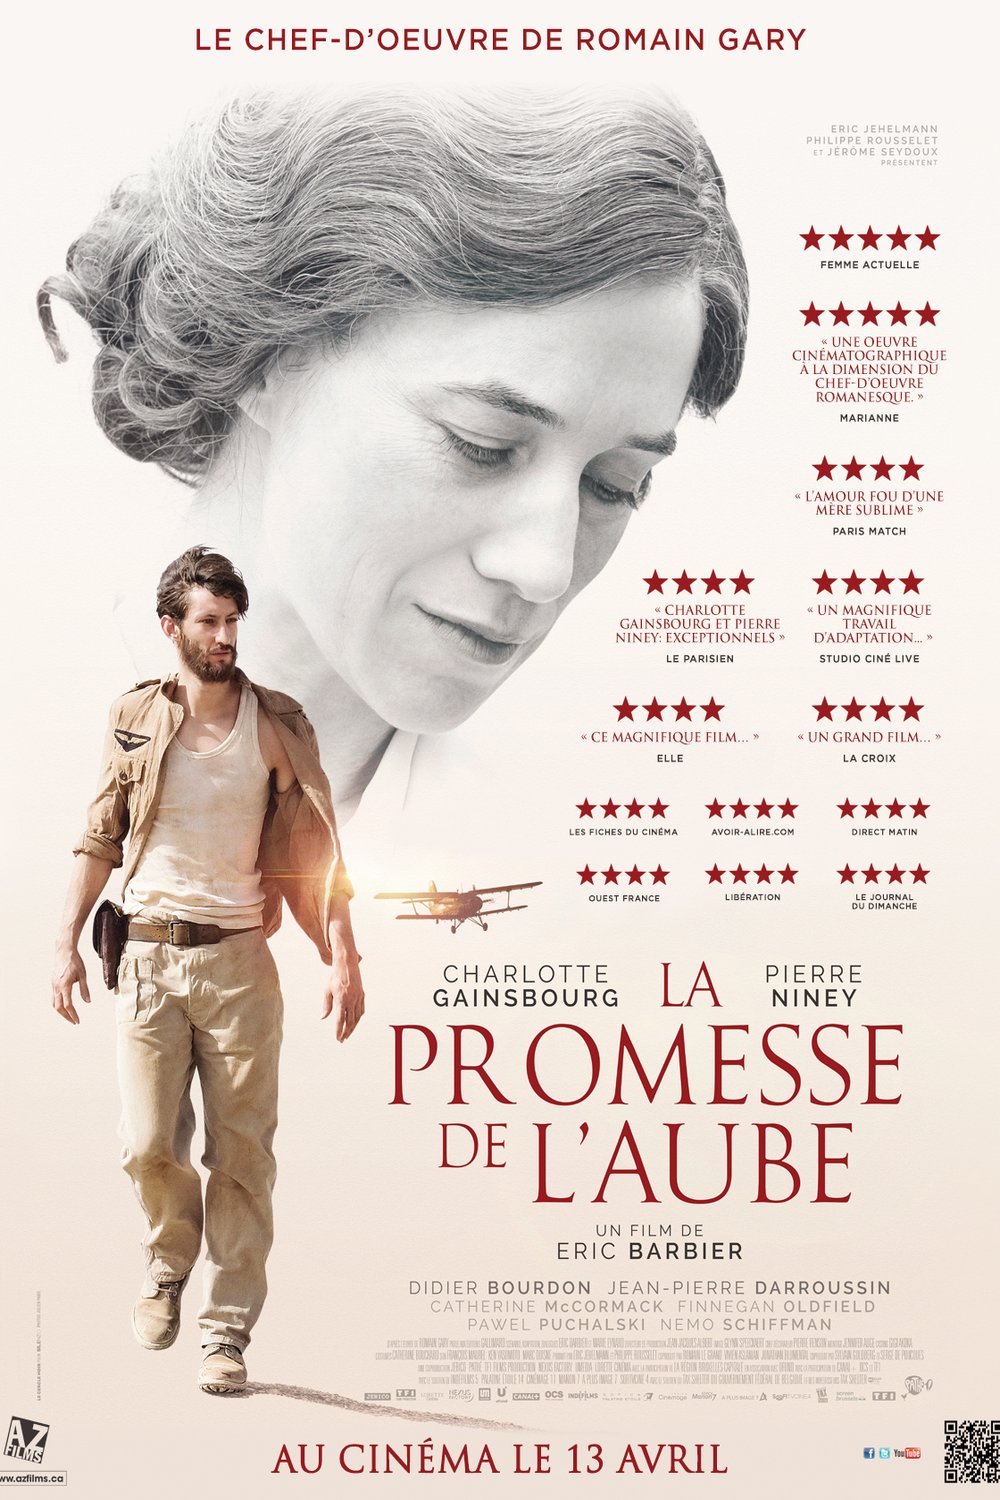 Poster of the movie La Promesse de l'aube